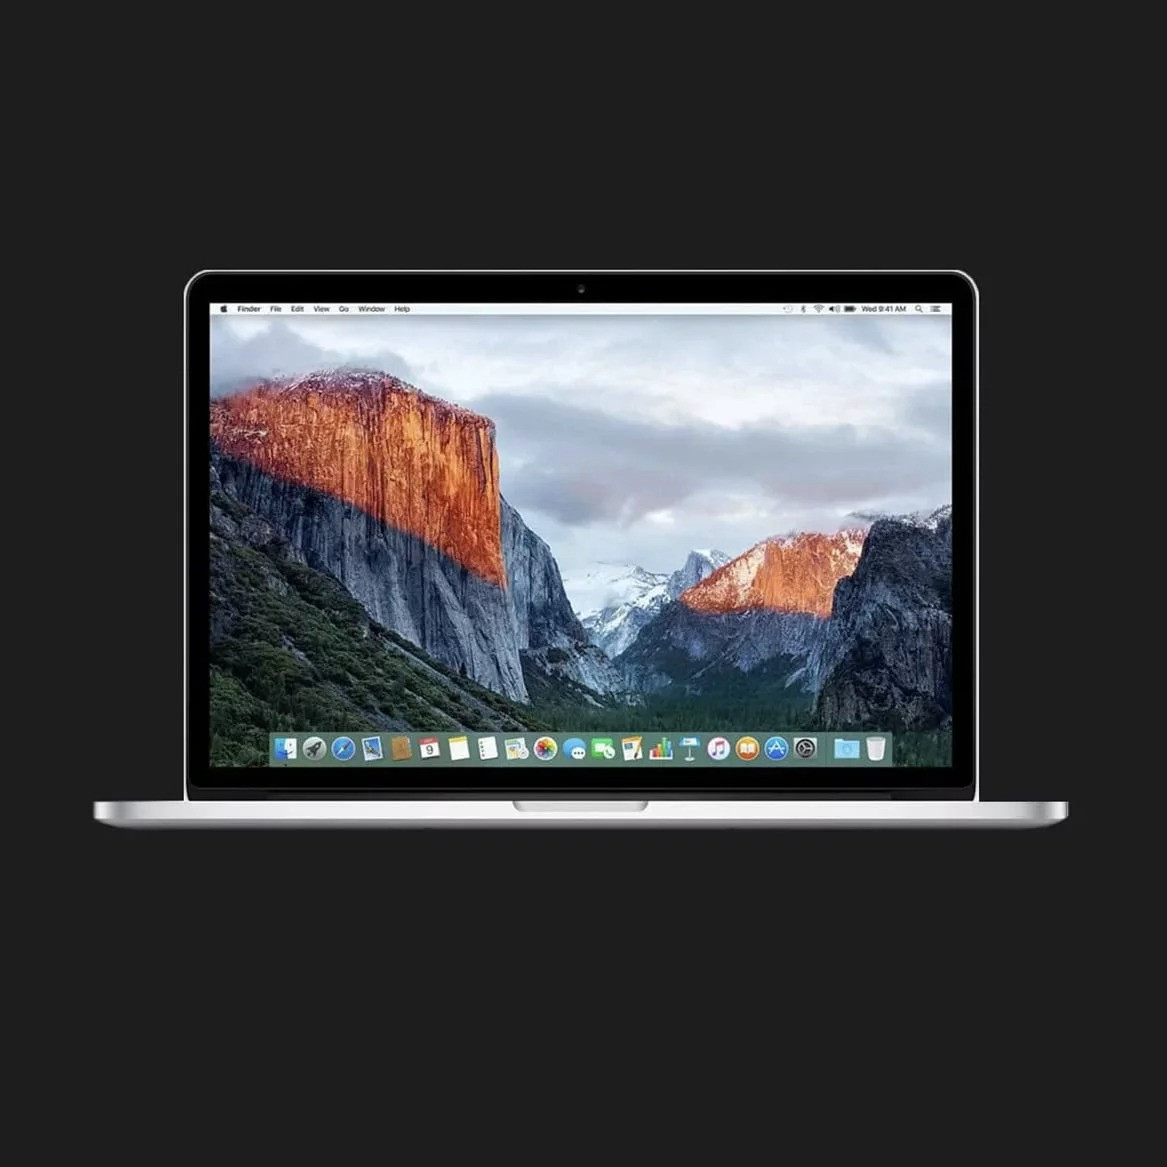 б/у Apple MacBook Pro 15, 2015 (256GB) (MJLQ2) (Відмінний стан)